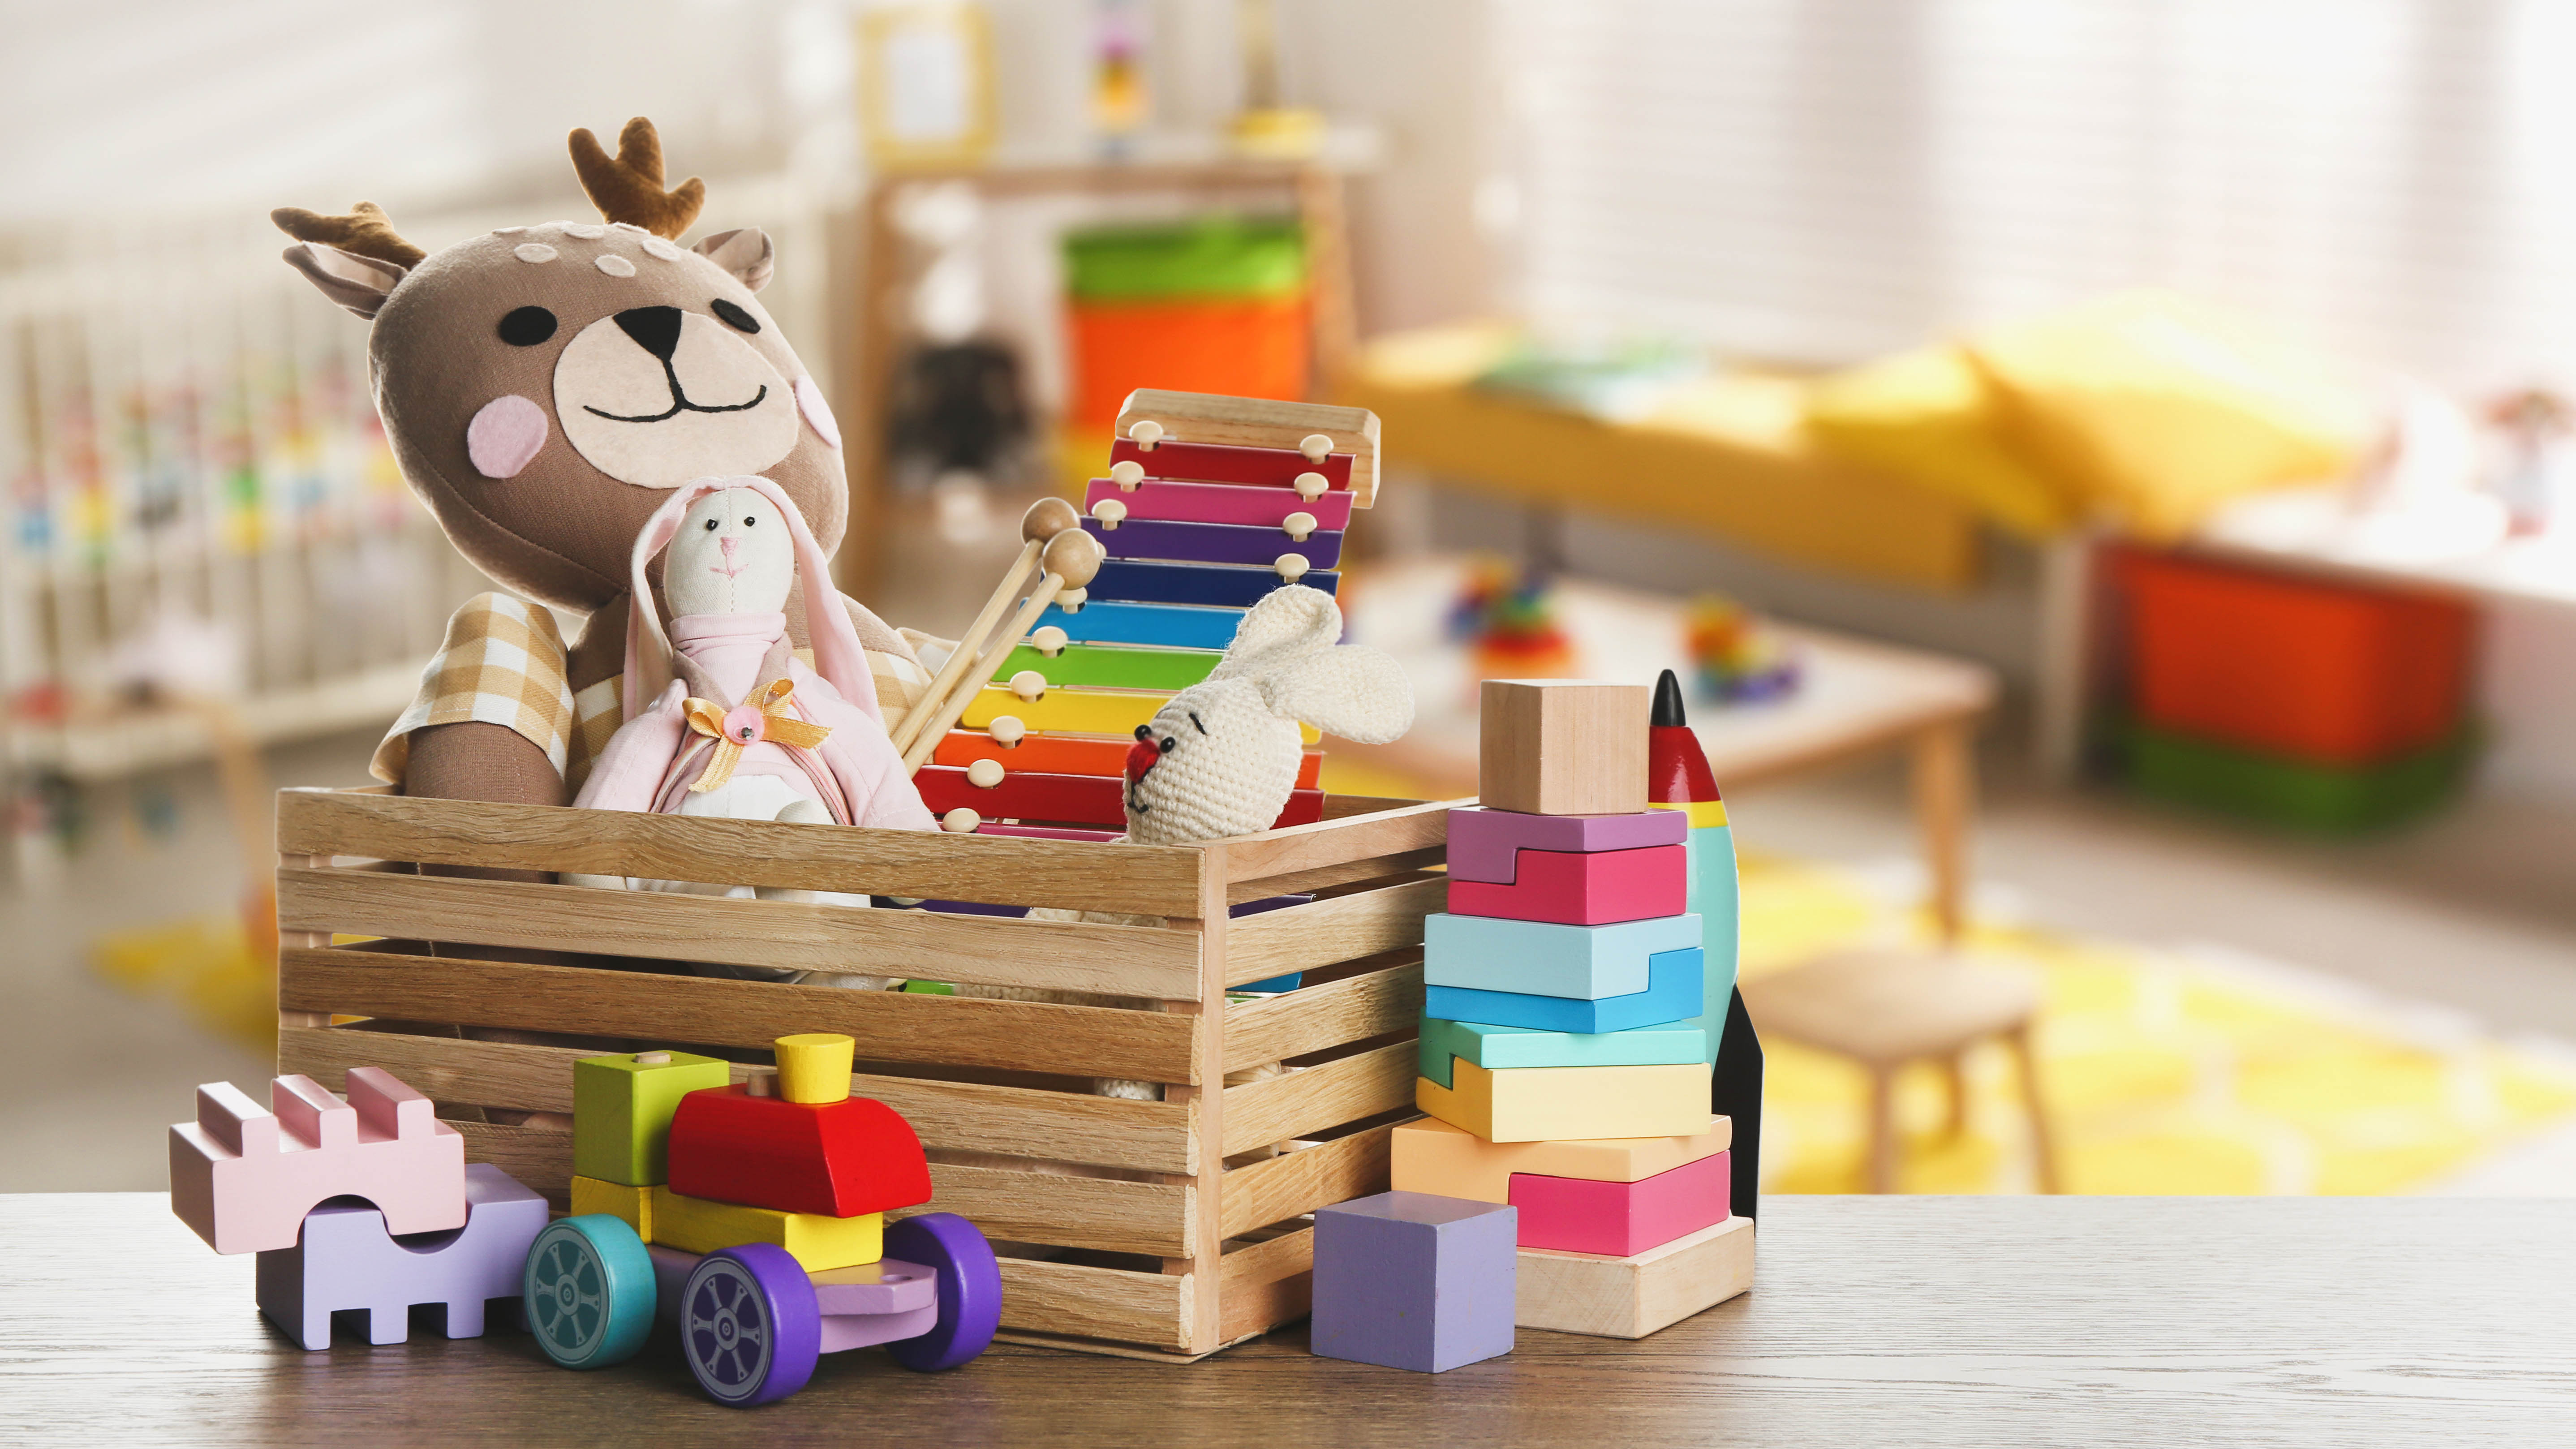 Коробка детских игрушек, включая мягкие игрушки.